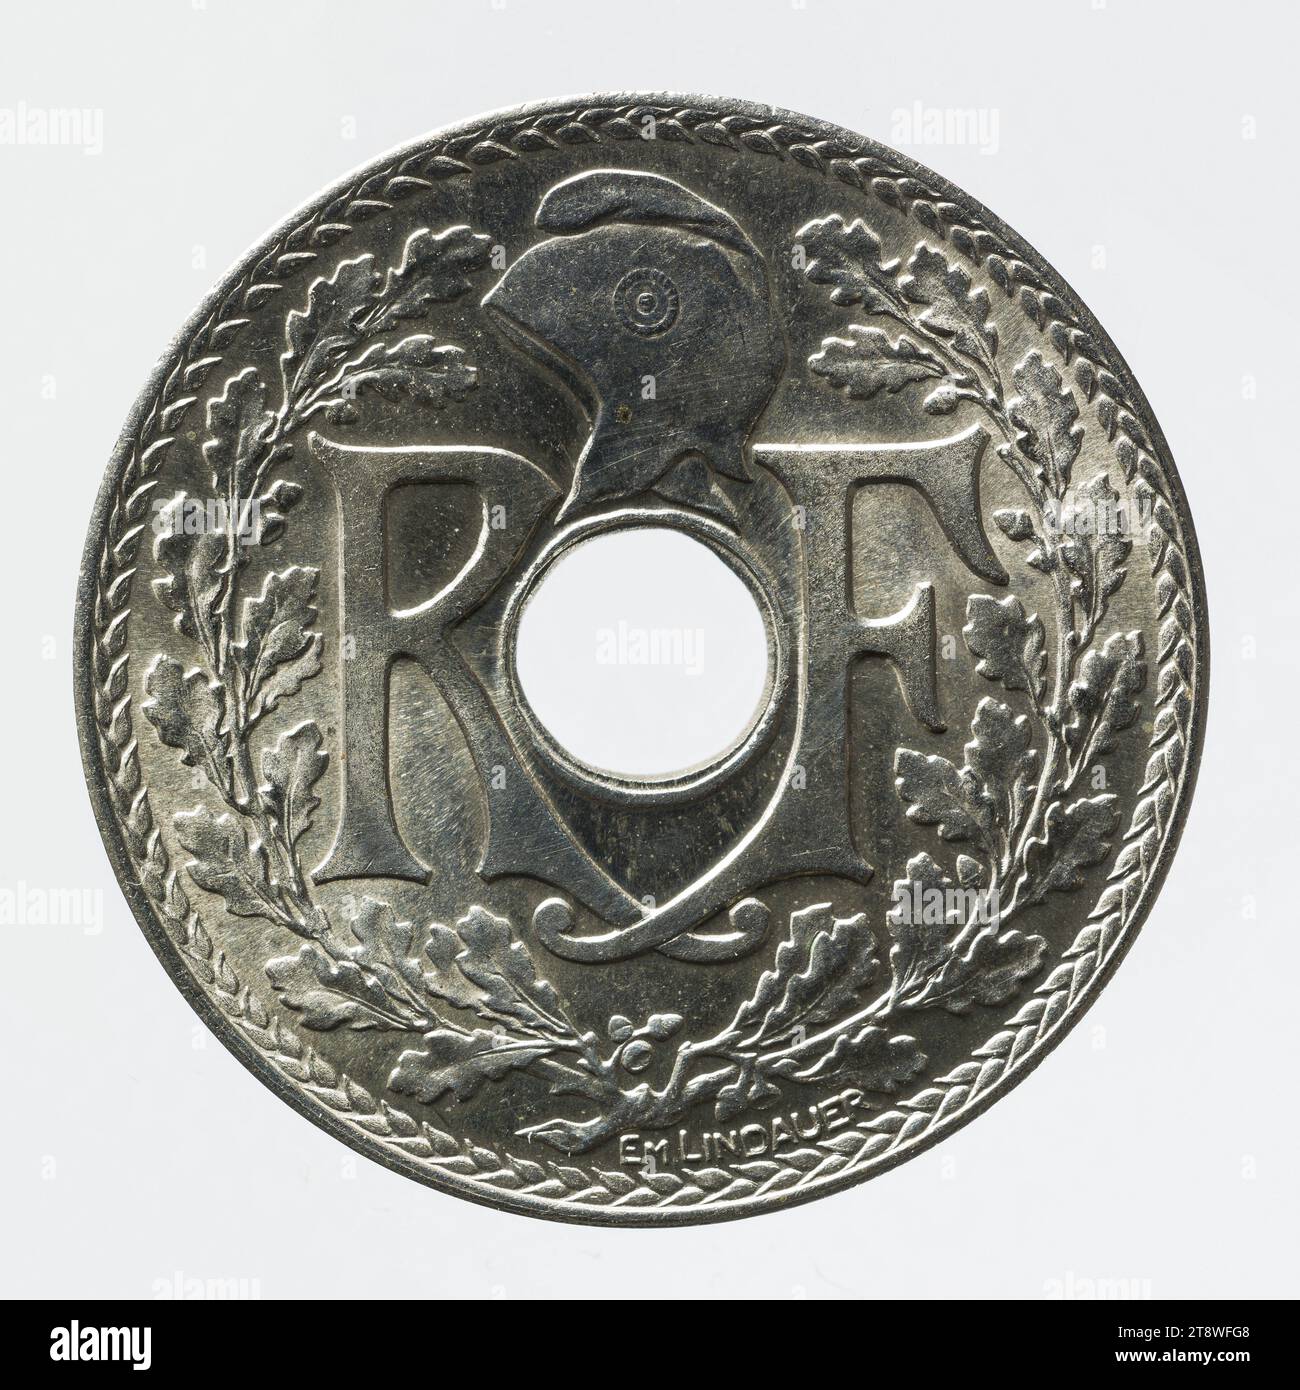 Coin of 25 centimes in nickel bronze of the IIIrd Republic, 1938, Lindauer, Edmond-Emile, Graveur en médailles, Array, Numismatique, Monnaie, Paris, Diameter: 2.4 cm, Weight (type dimension): 4.05 g Stock Photo